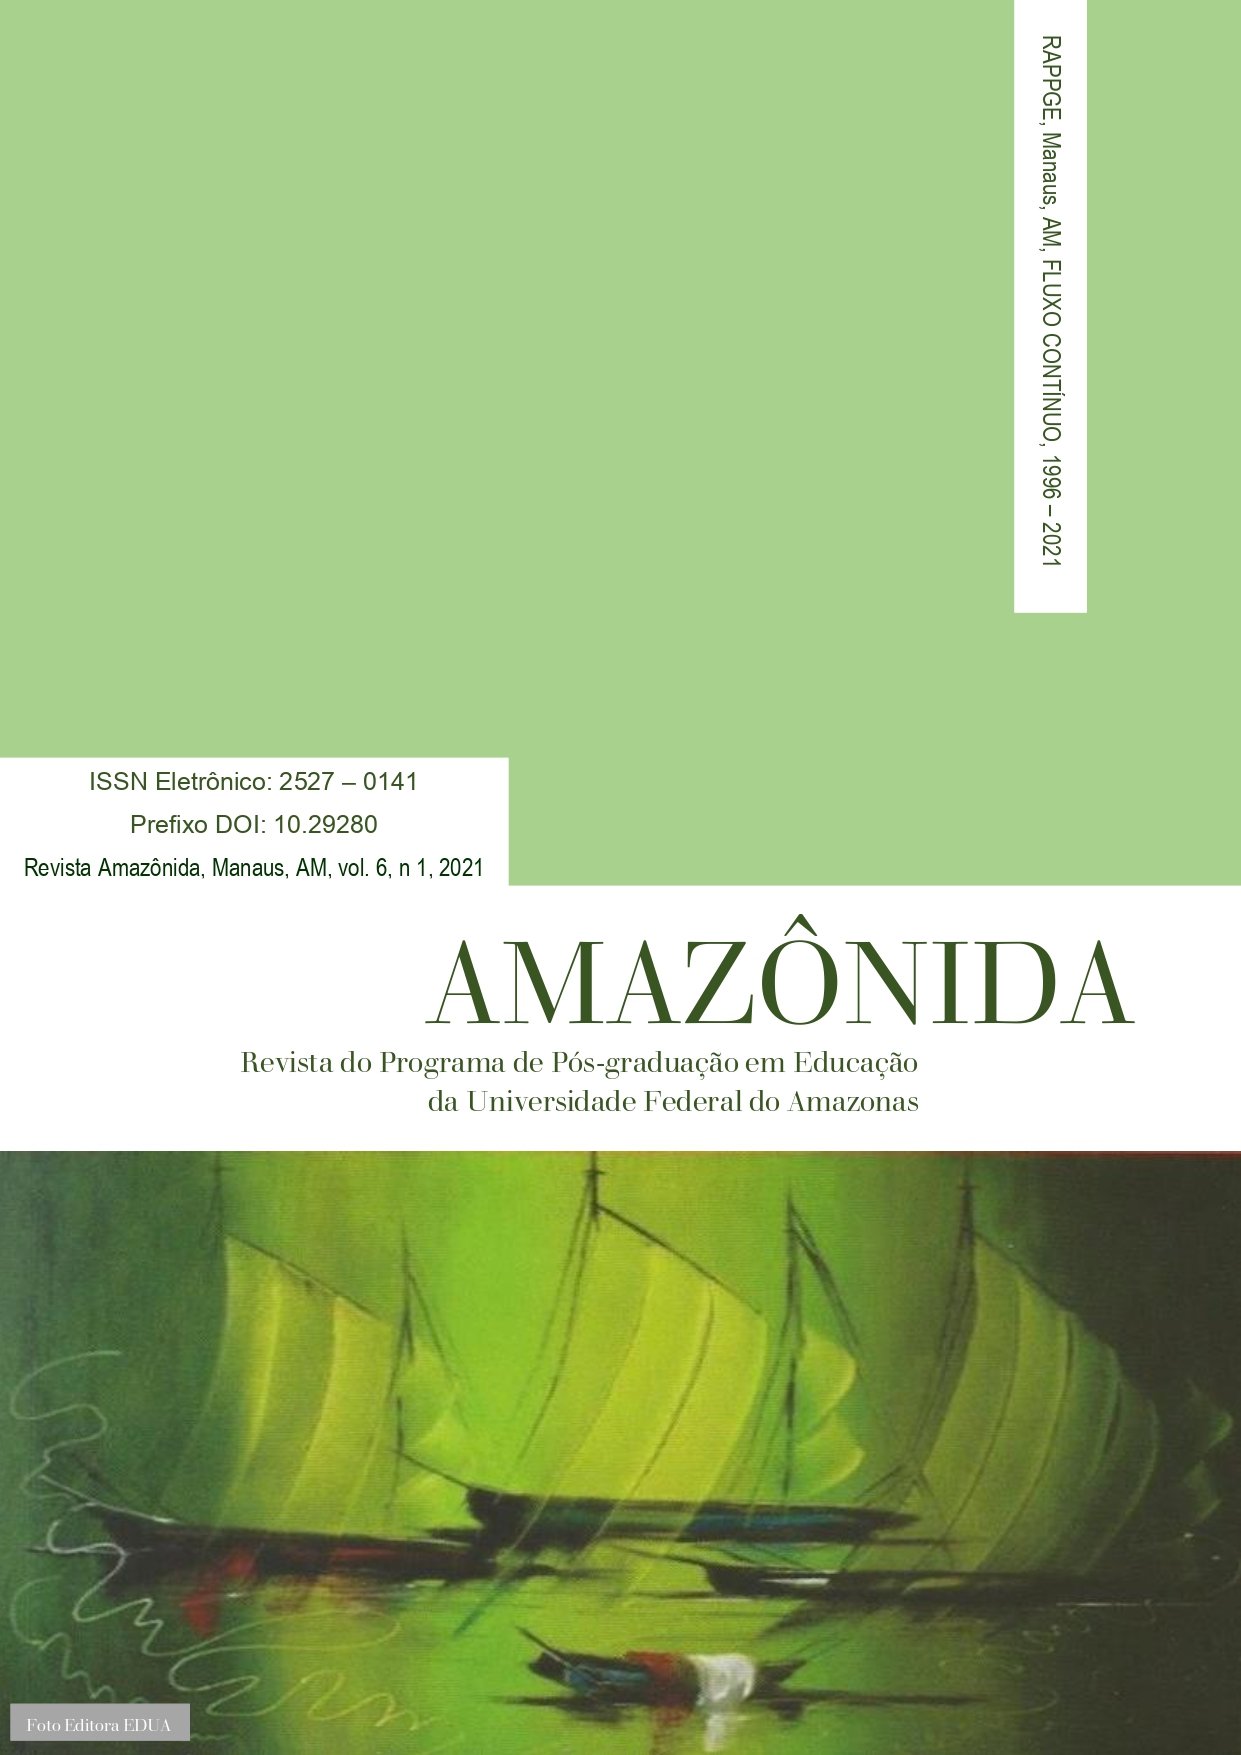 					Visualizar v. 6 n. 01 (2021): Revista Amazônida: Revista do Programa de Pós-Graduação em Educação da Universidade Federal do Amazonas
				